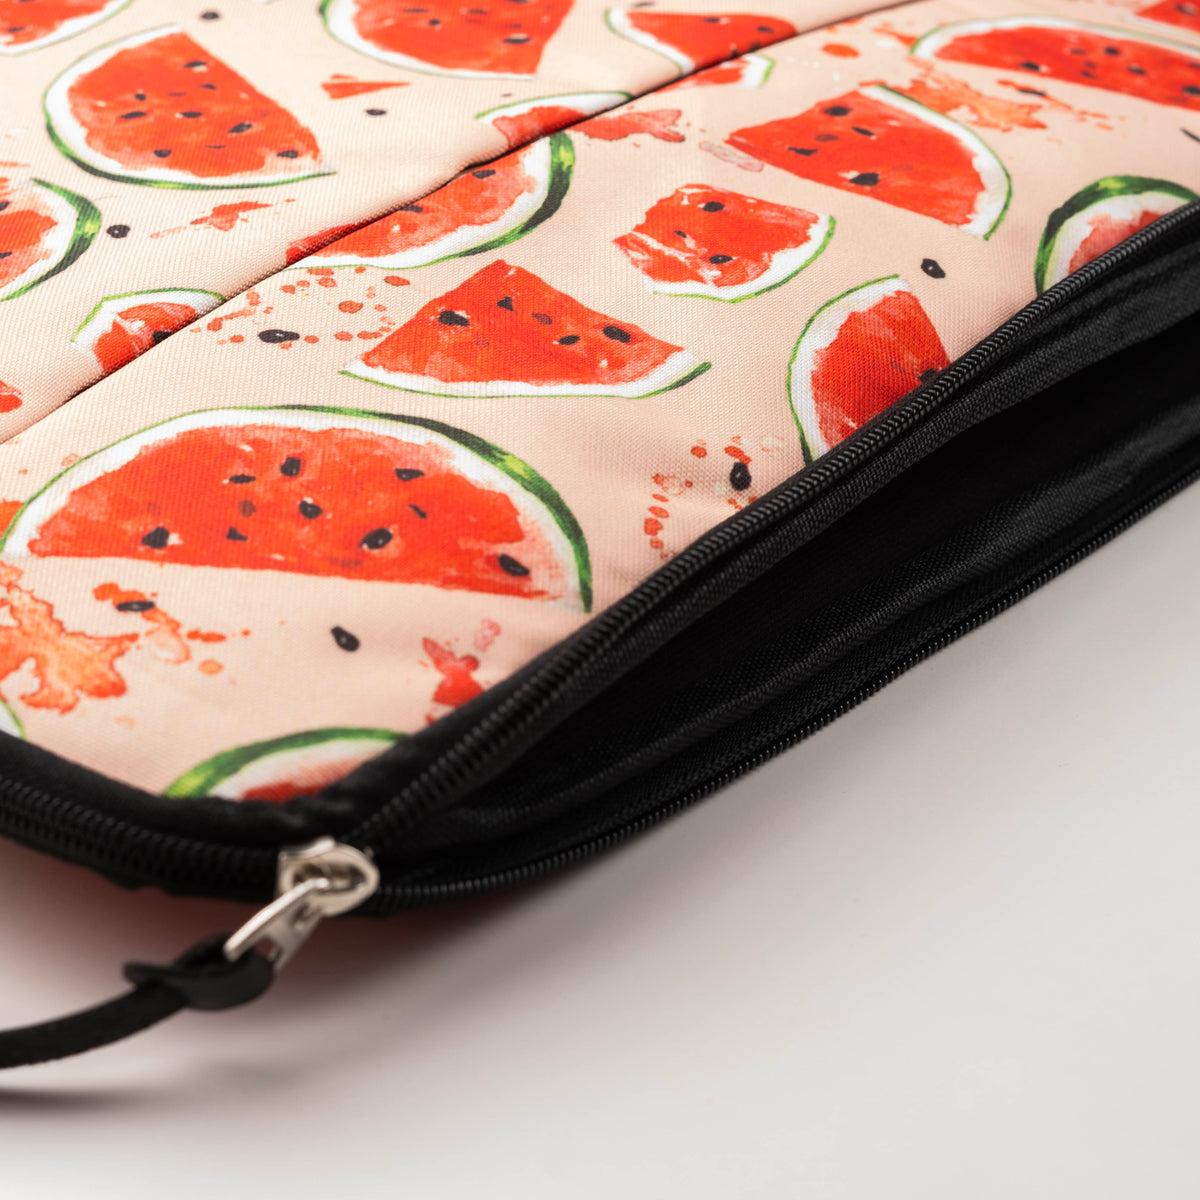 Watermelon Laptop Bag